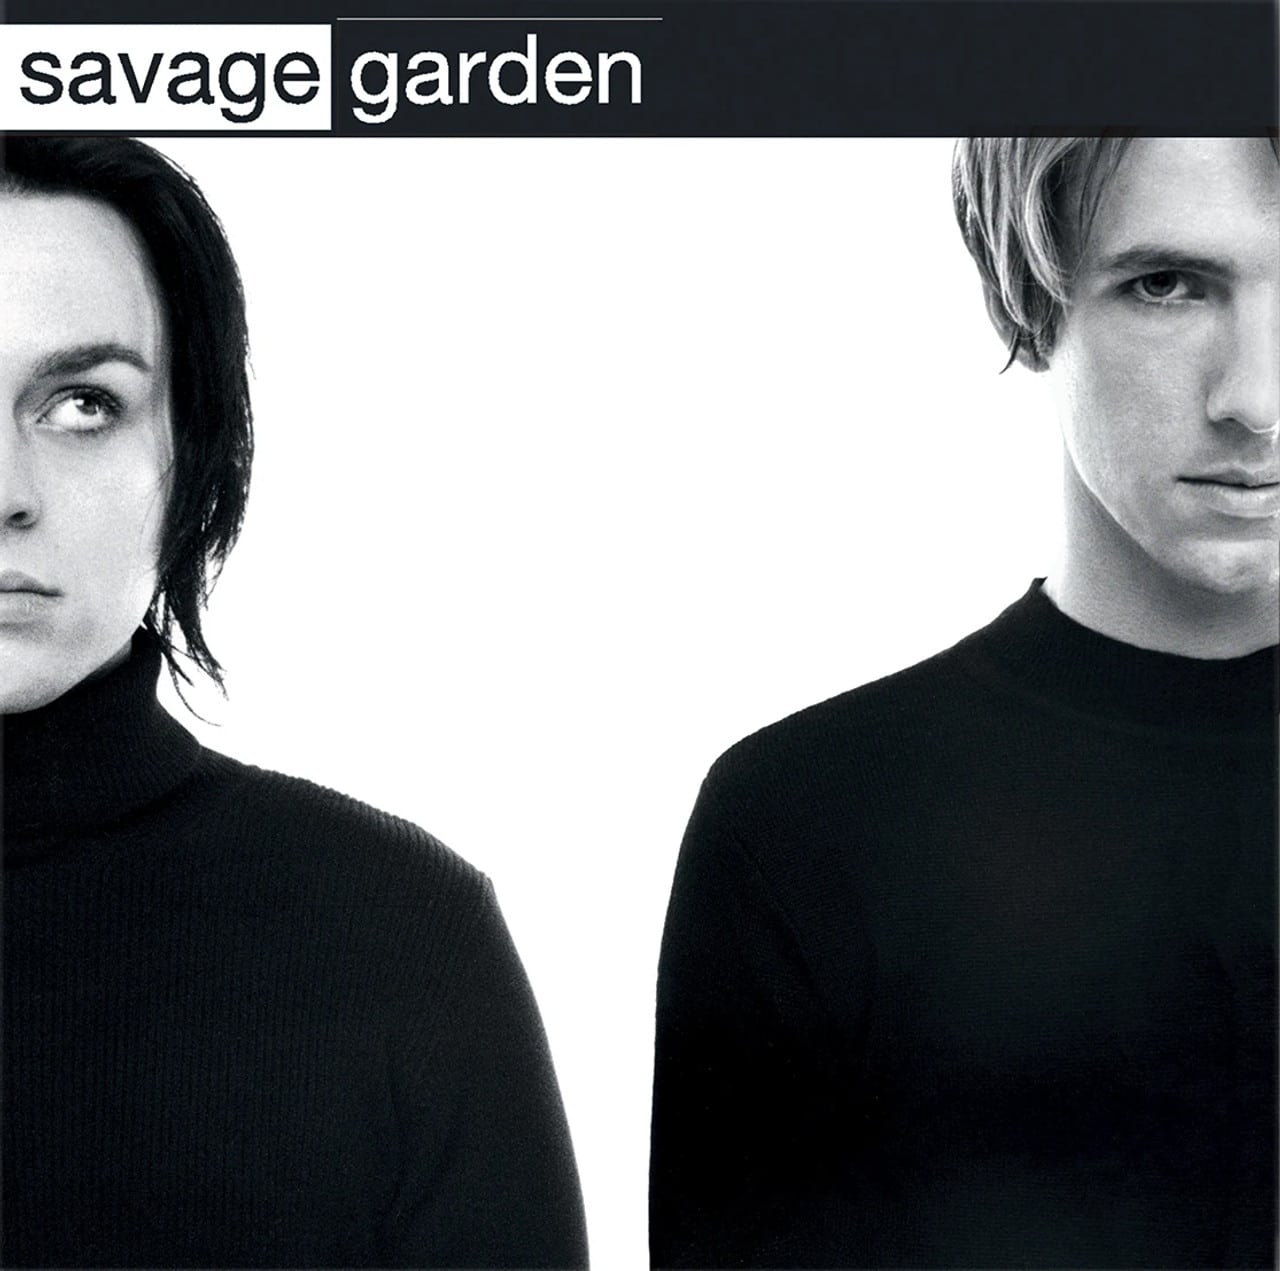 Savage Garden - Savage garden